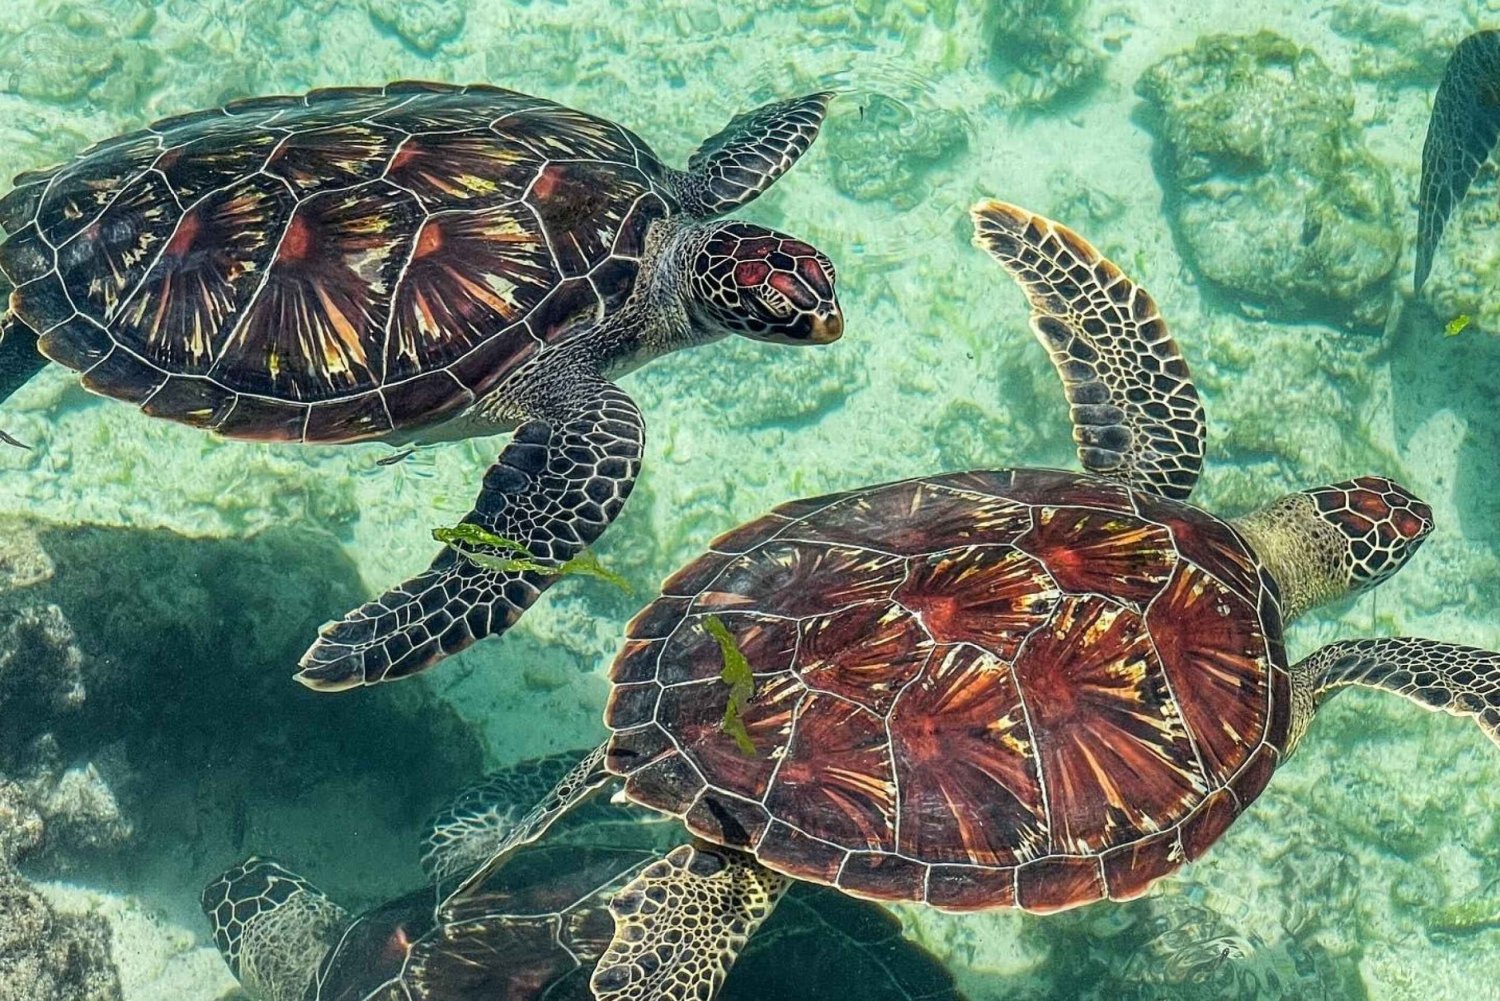 Zanzibar: wycieczka z pływaniem z żółwiami